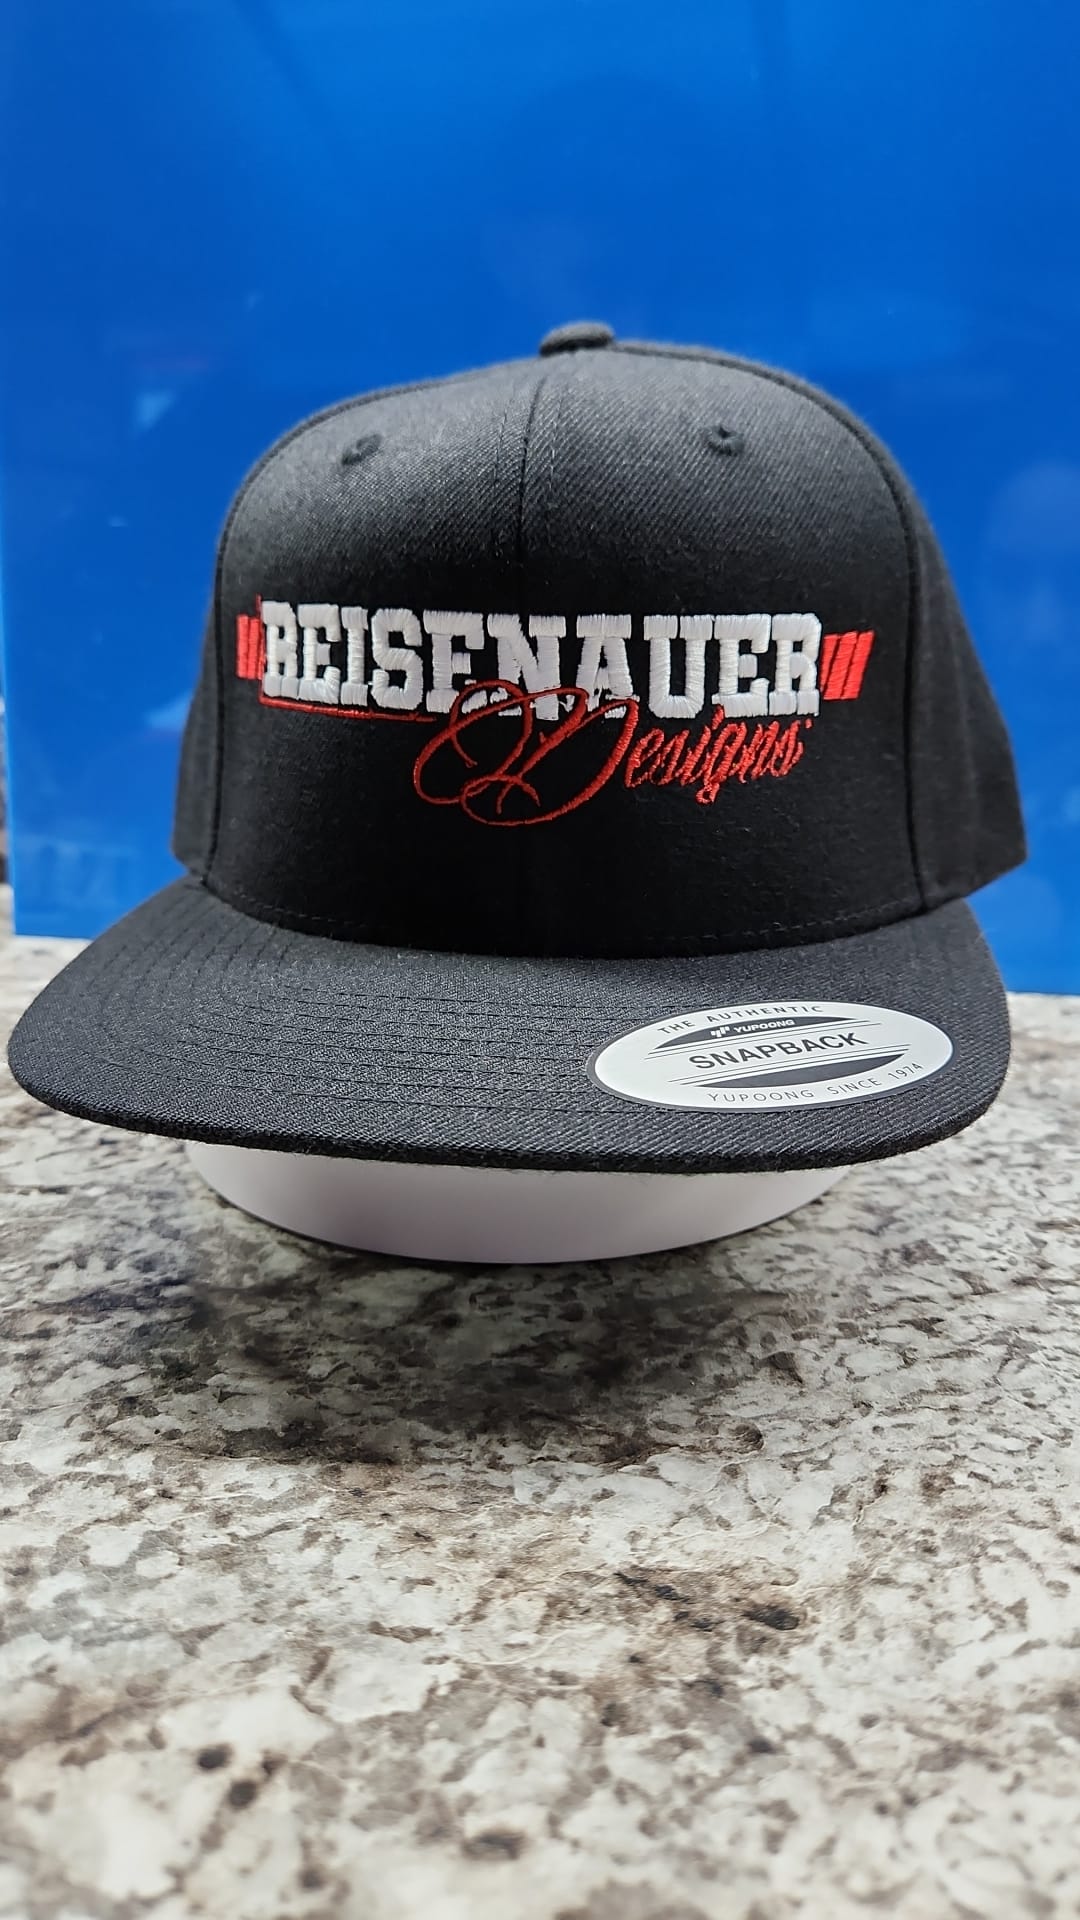 Reisenauer Designs Hat